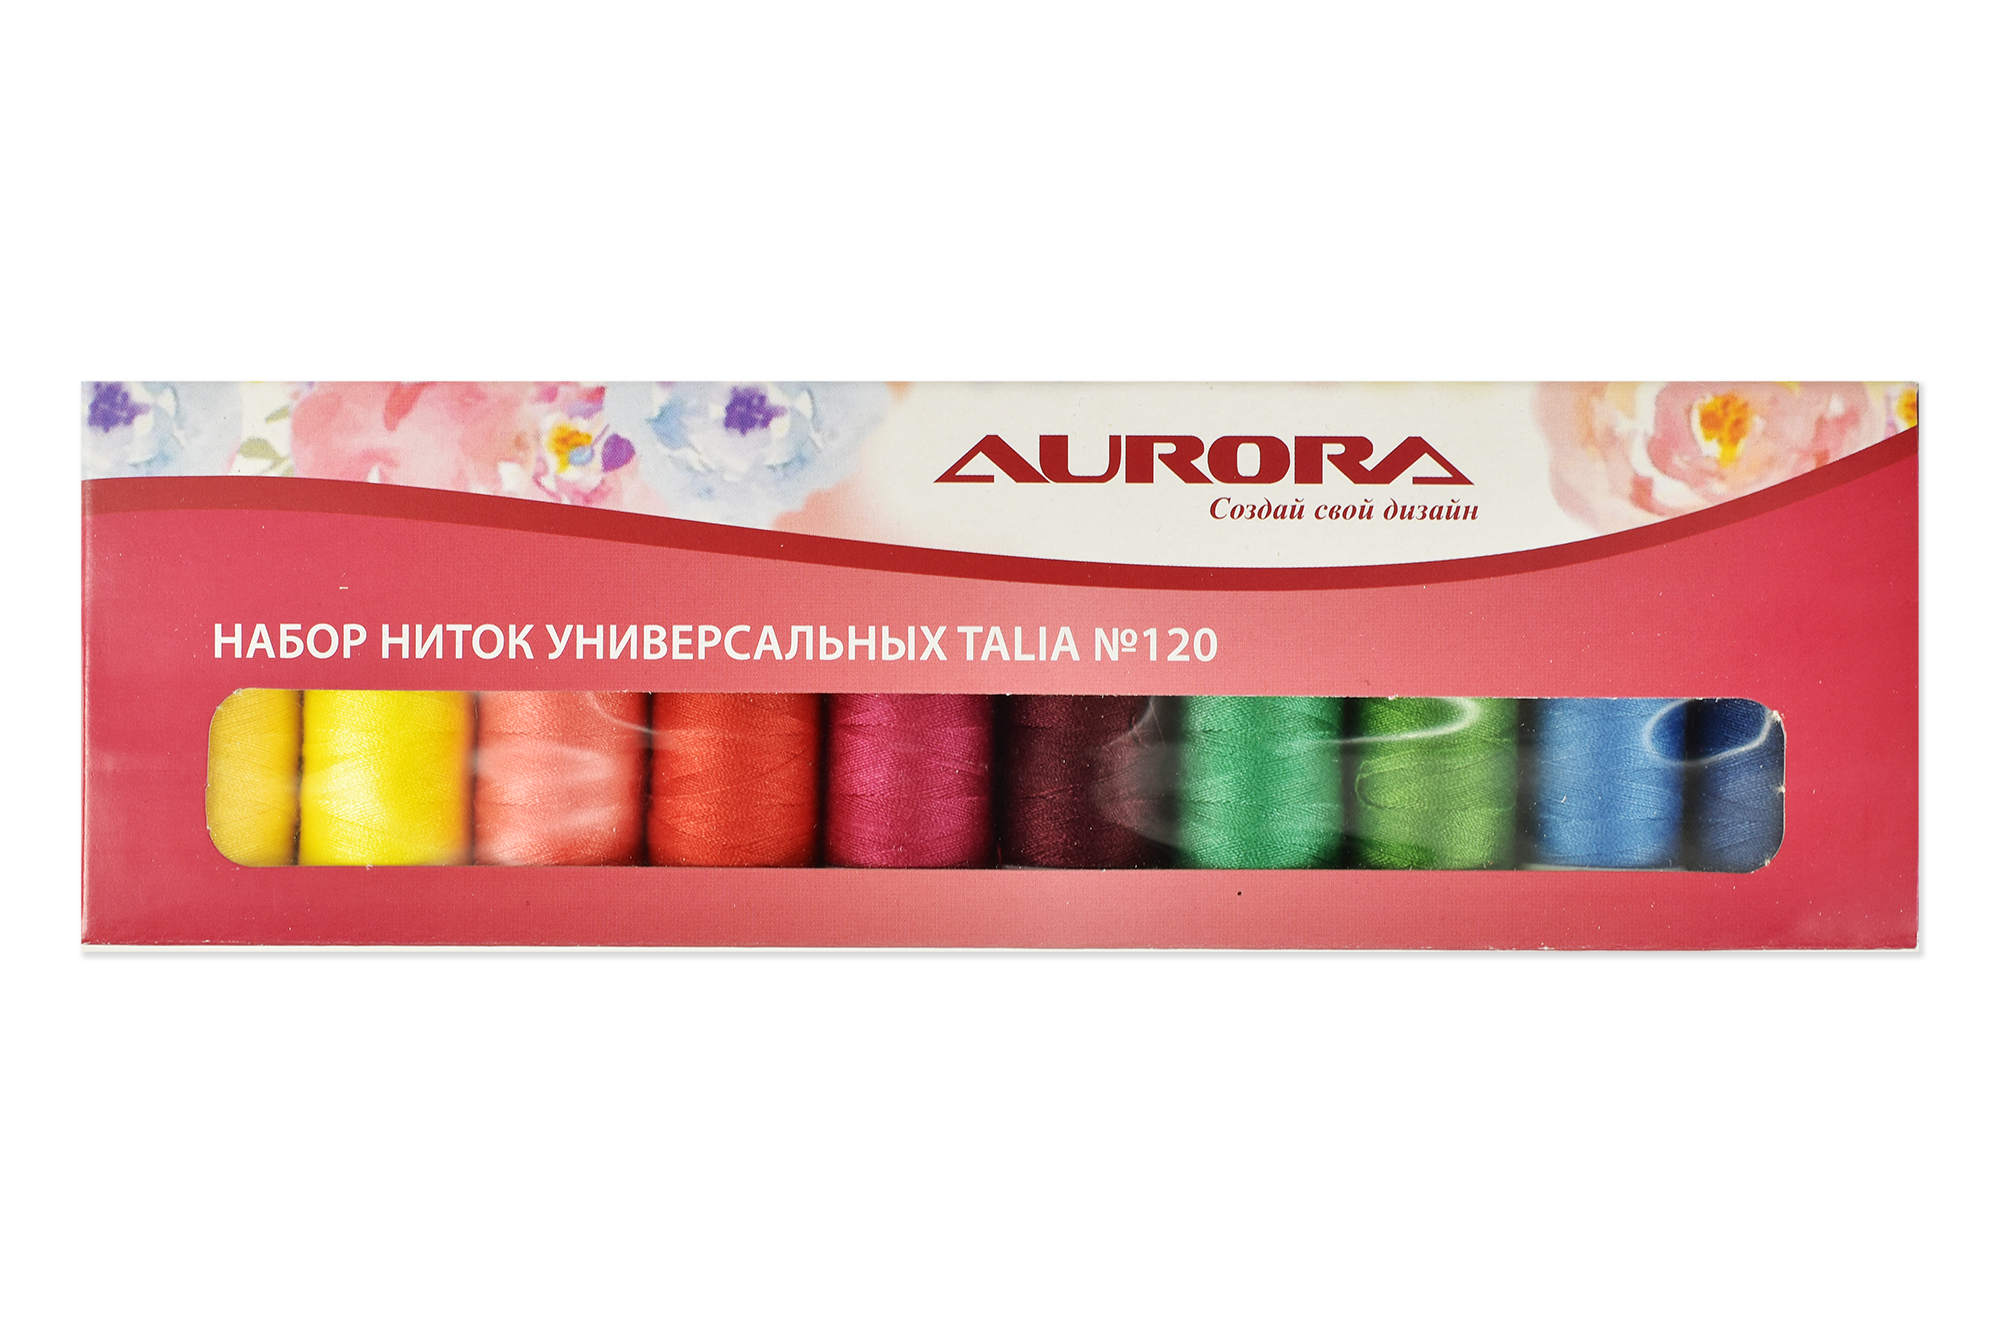 Набор ниток универсальных Talia №120 AU-1205 Aurora оптом